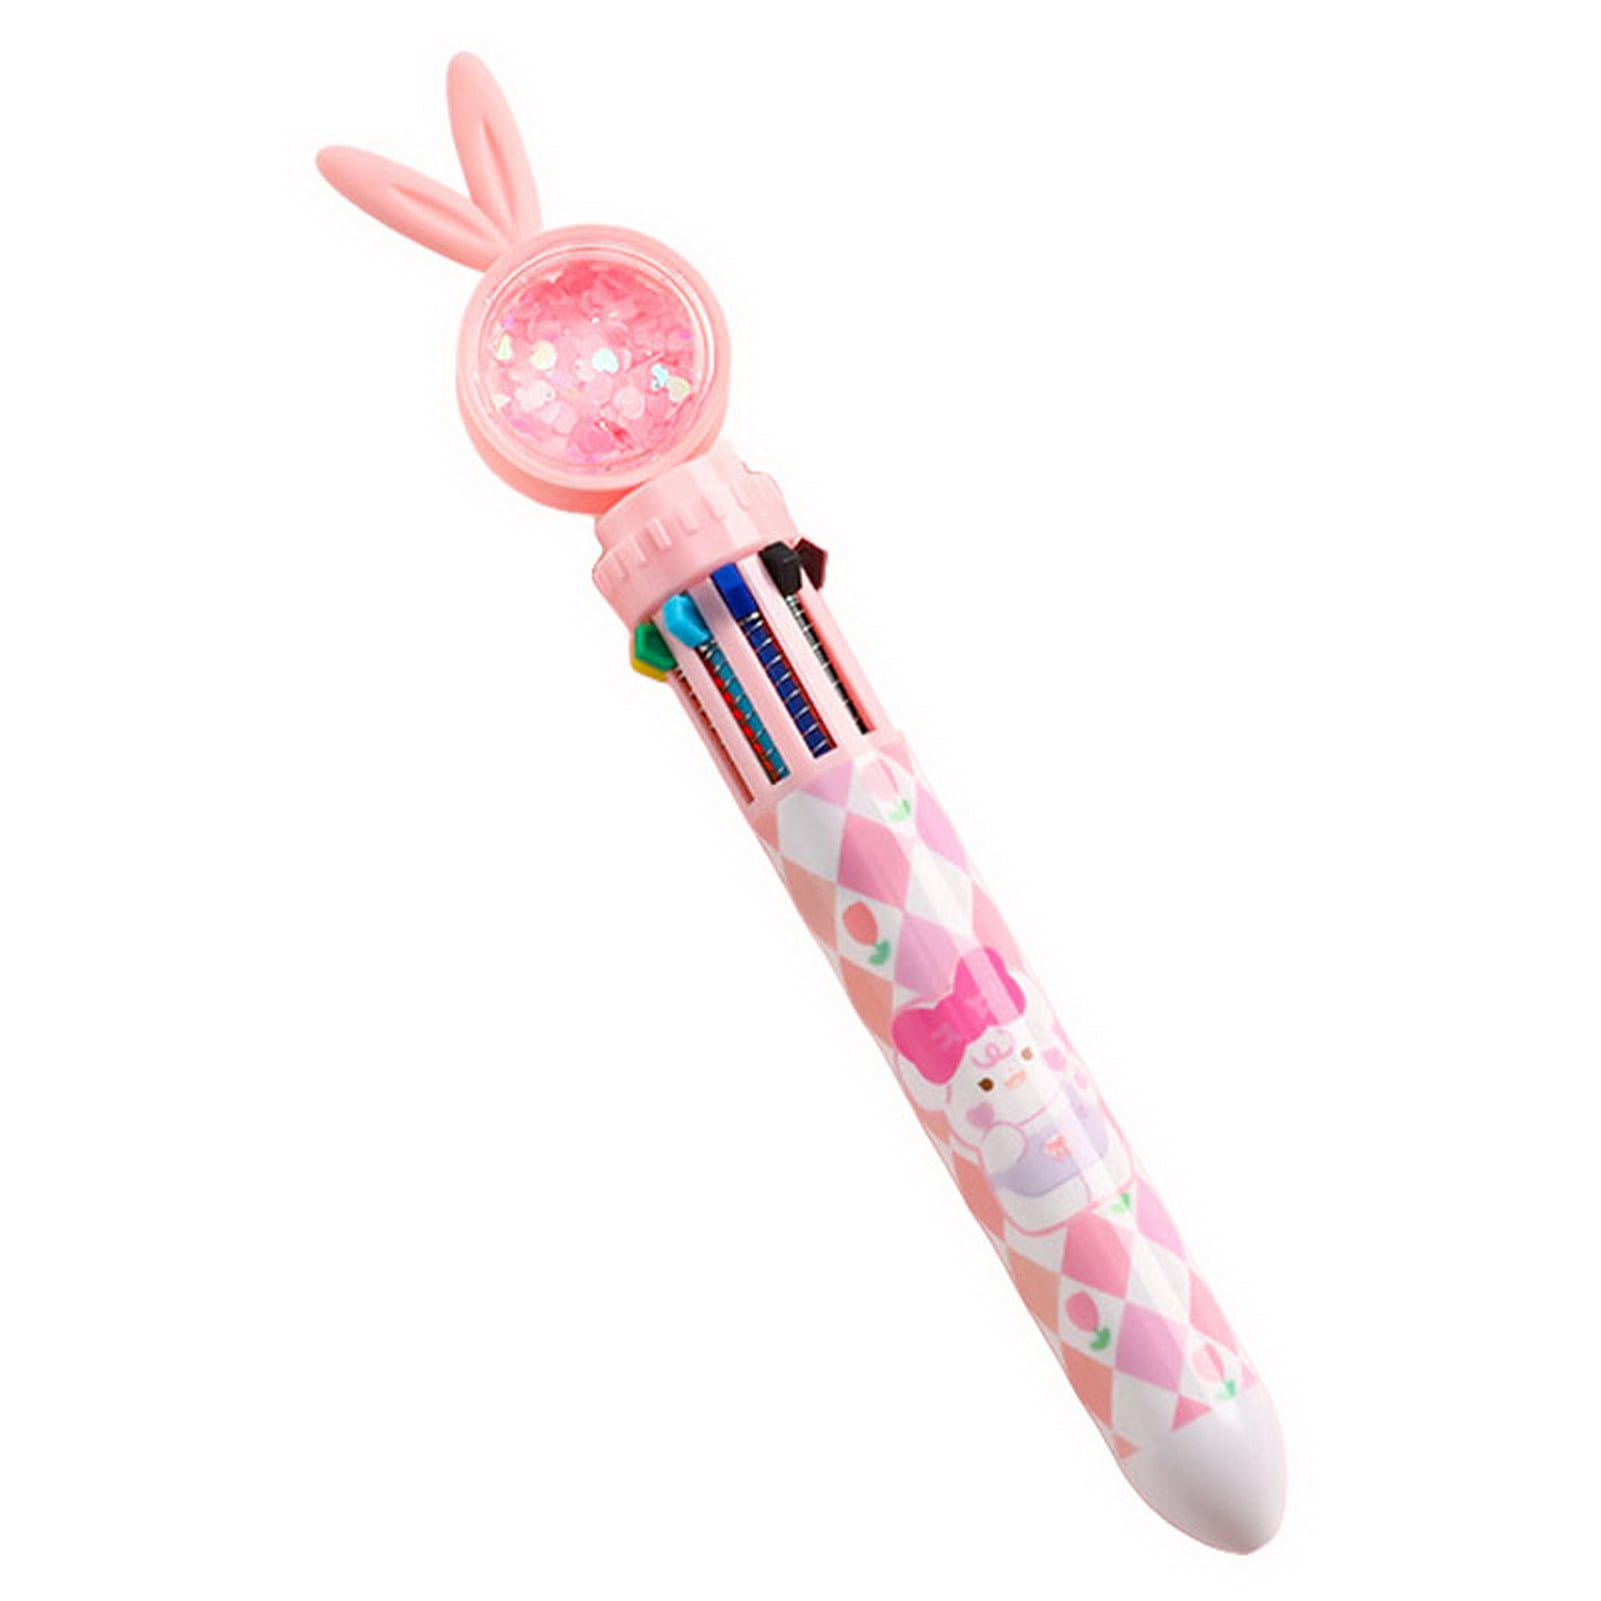 harmtty Gel Pen 4 in 1 Multi-functional Bubble Maker Roller Stamper  Stationery Cartoon Fruit Pattern Plastic Writing Pen School Supplies,Pink